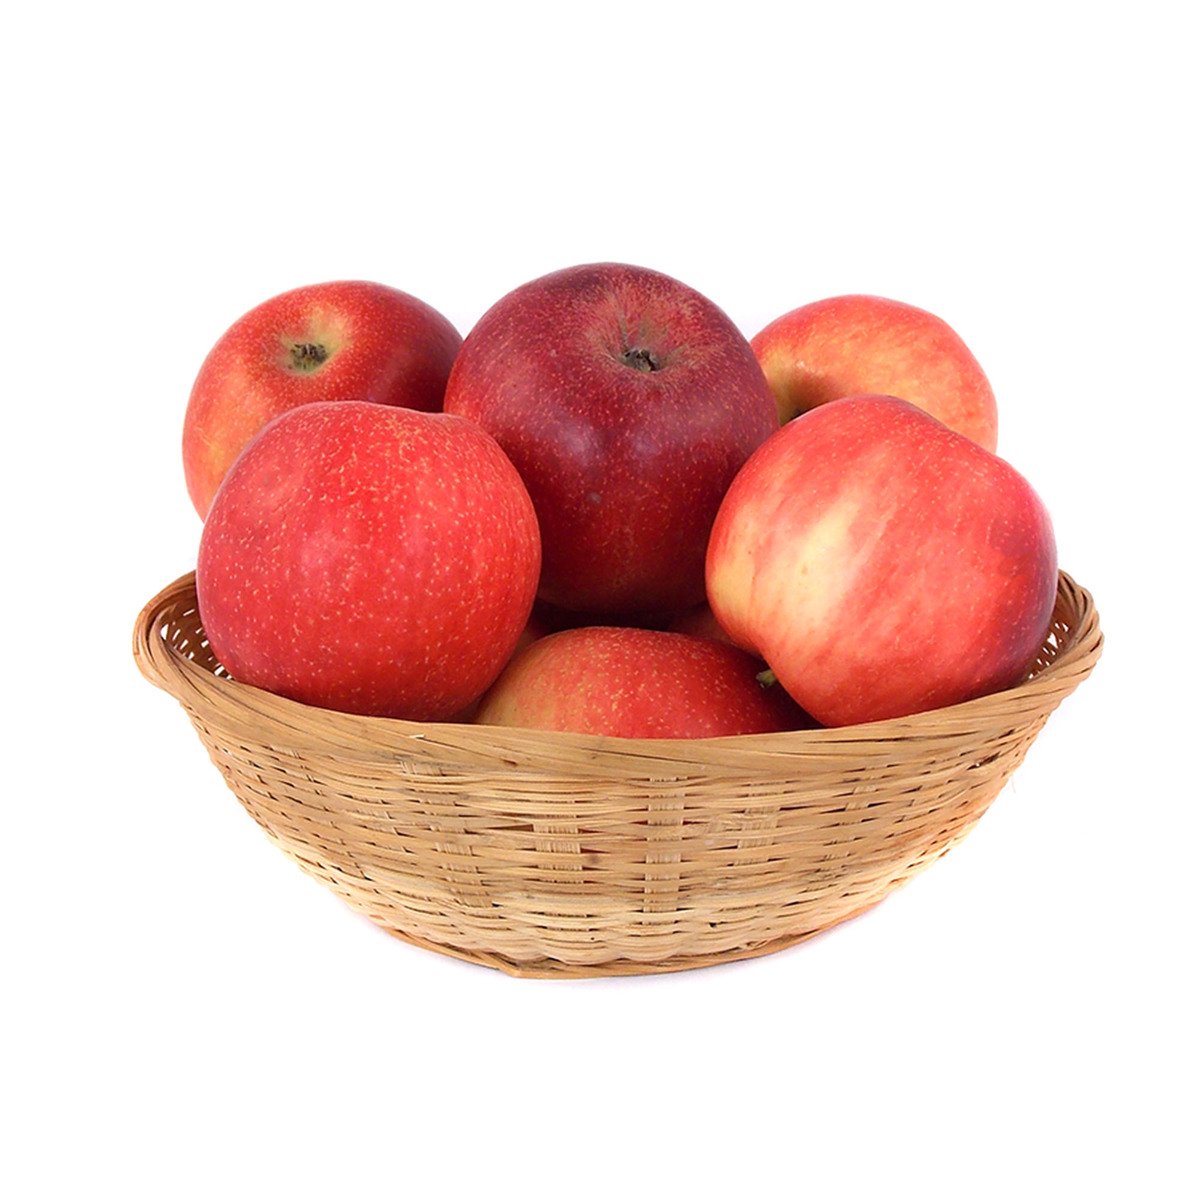 Apple Red Jonaprince 1kg Online At Best Price Apples Lulu Uae Price In Saudi Arabia Lulu 